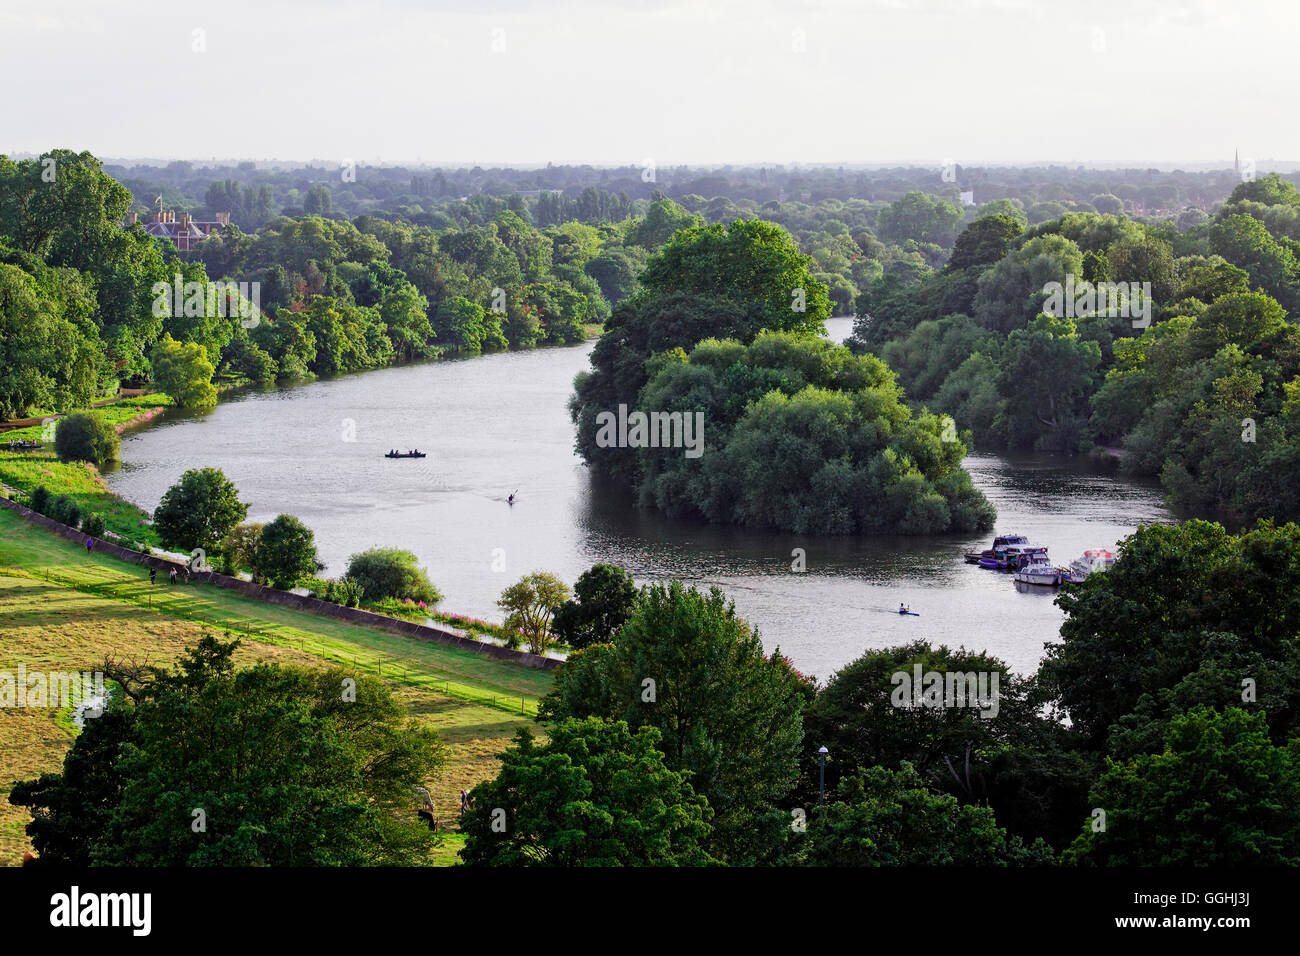 Vue de jardins en terrasse sur la rivière Thames et de Glover's Island, Richmond upon Thames, Surrey, Angleterre, Royaume-Uni Banque D'Images